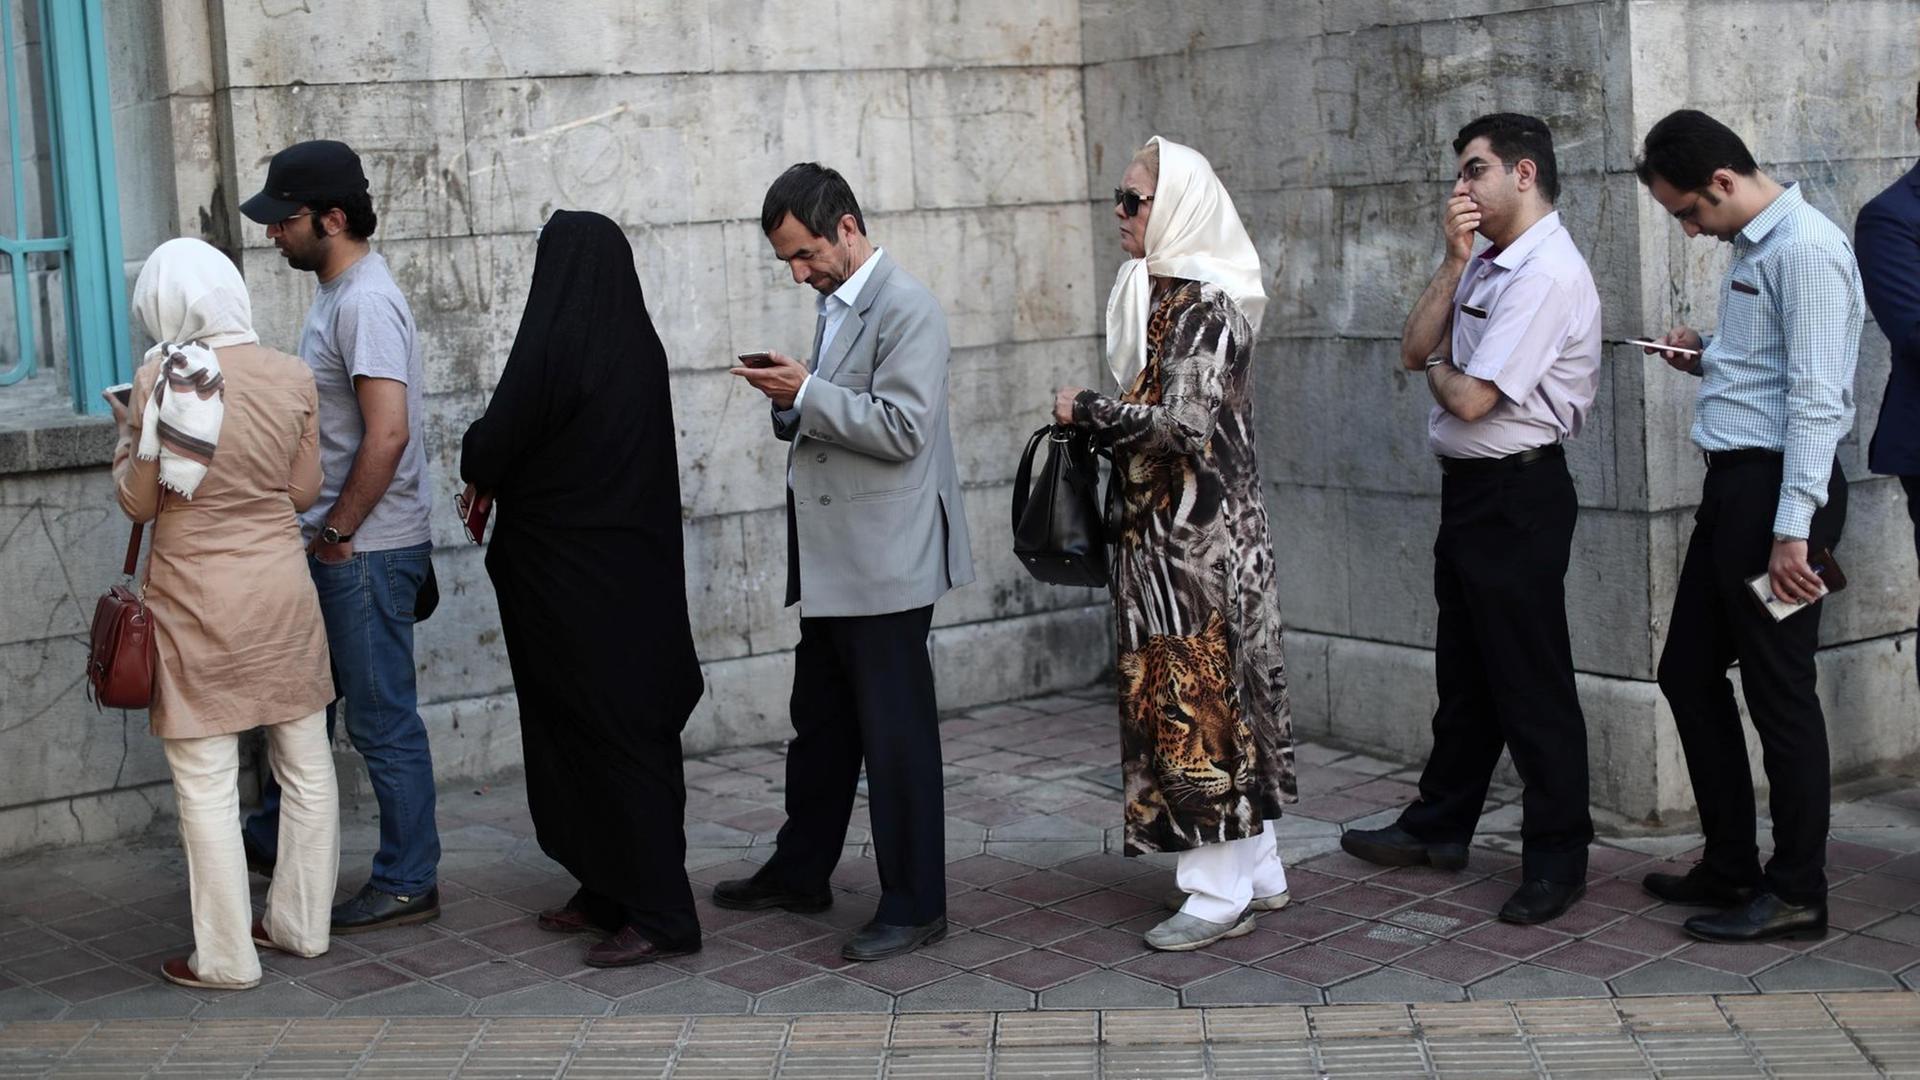 Mehrere Frauen und Männer stehen vor einem Gebäude in einer lockeren Warteschlange. Einige unterhalten sich, andere blicken auf ihre Smartphones.